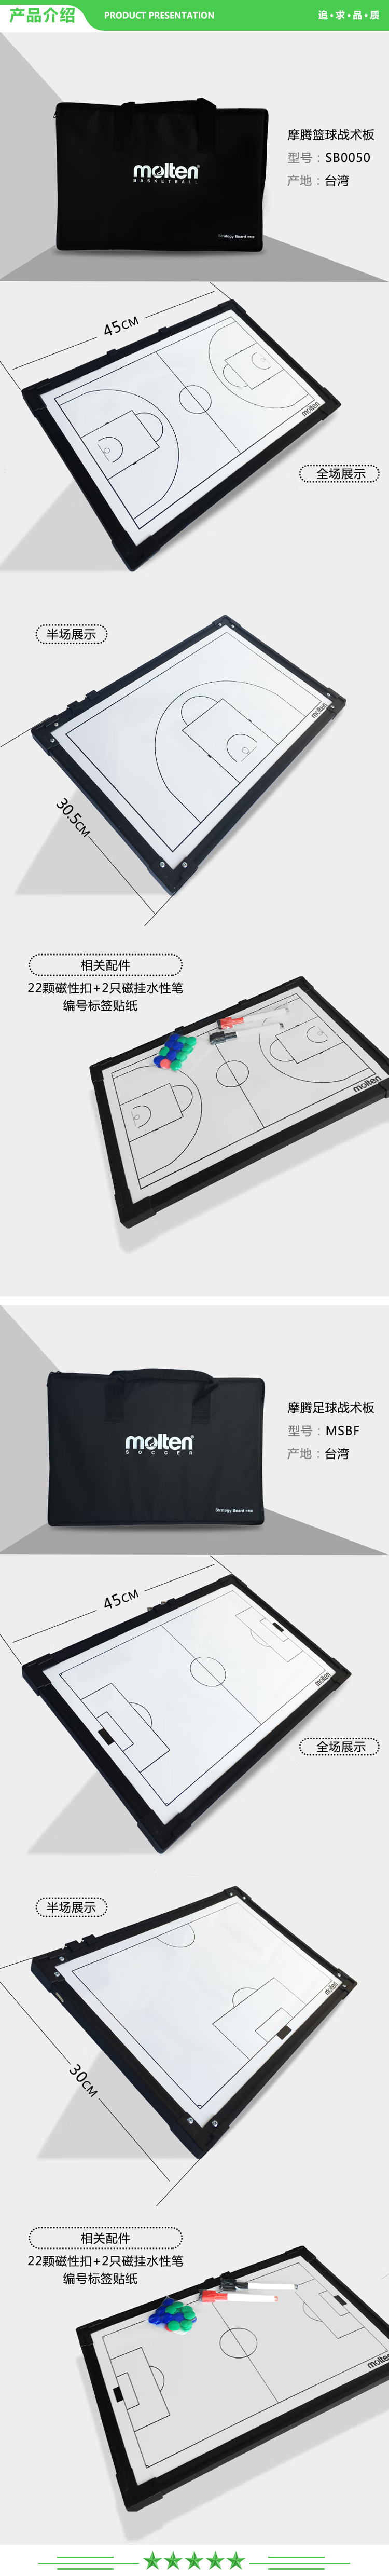 摩腾 molten MSBH 手球战术板 篮球战术板 足球作战板 排球教练装备.jpg